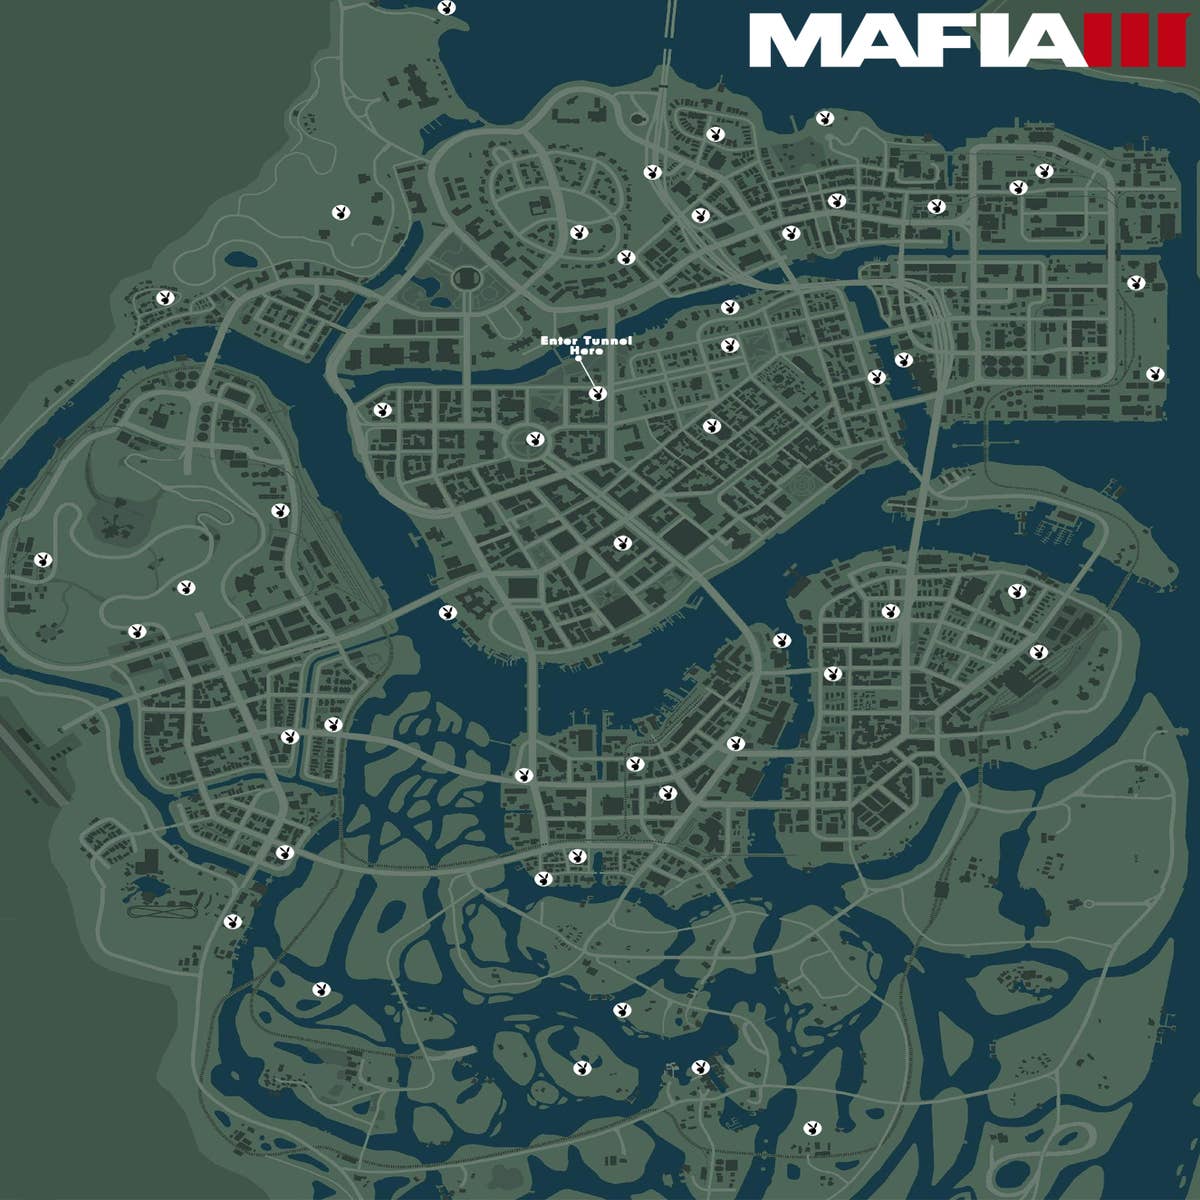 Mafia III PS4 (Com mapa) São Mamede De Infesta E Senhora Da Hora • OLX  Portugal